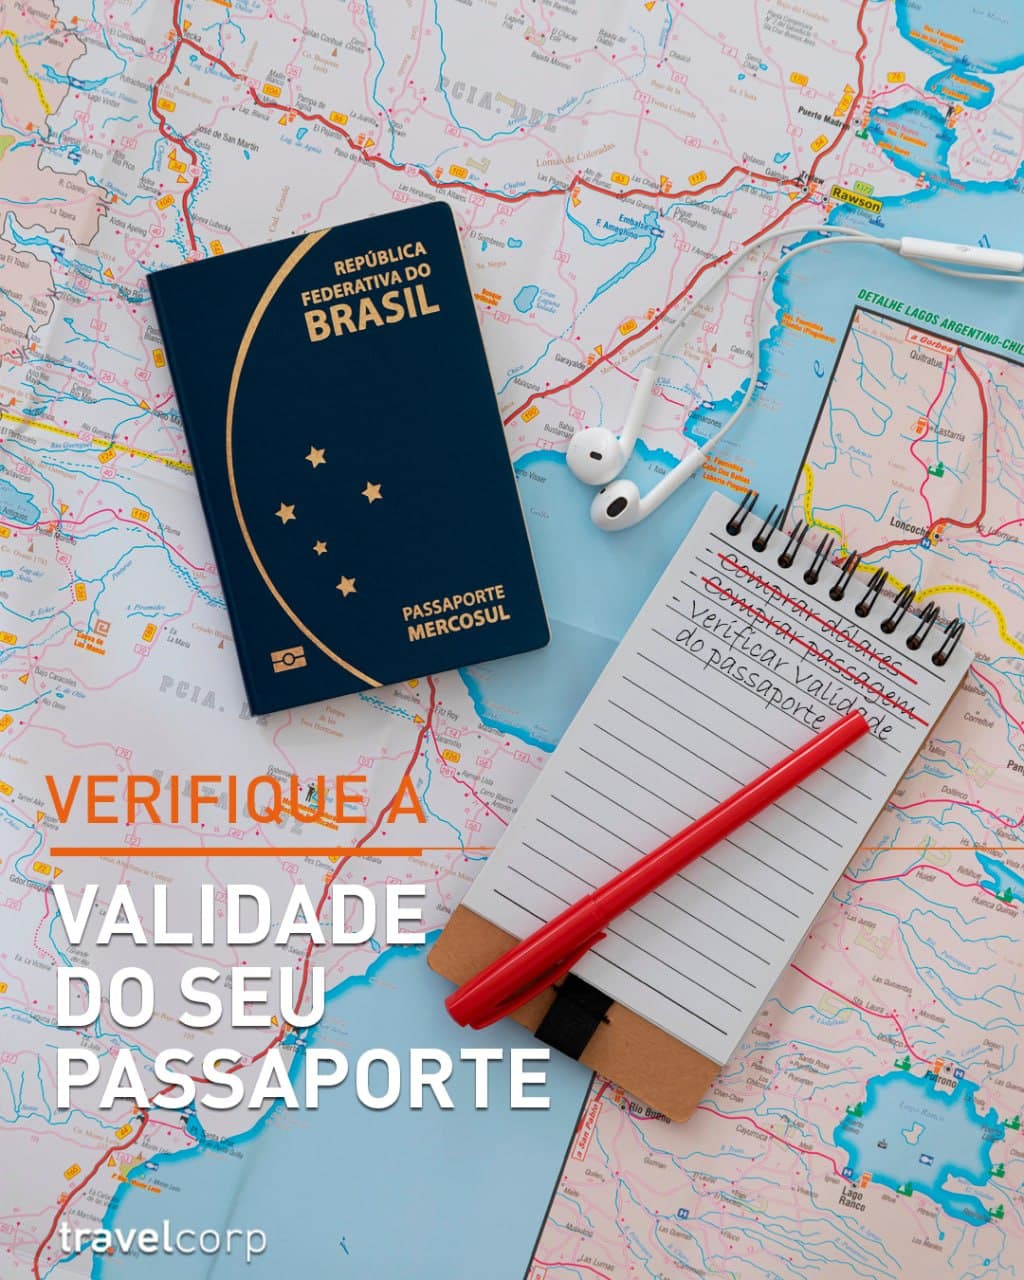 Verifique a validade do seu passaporte